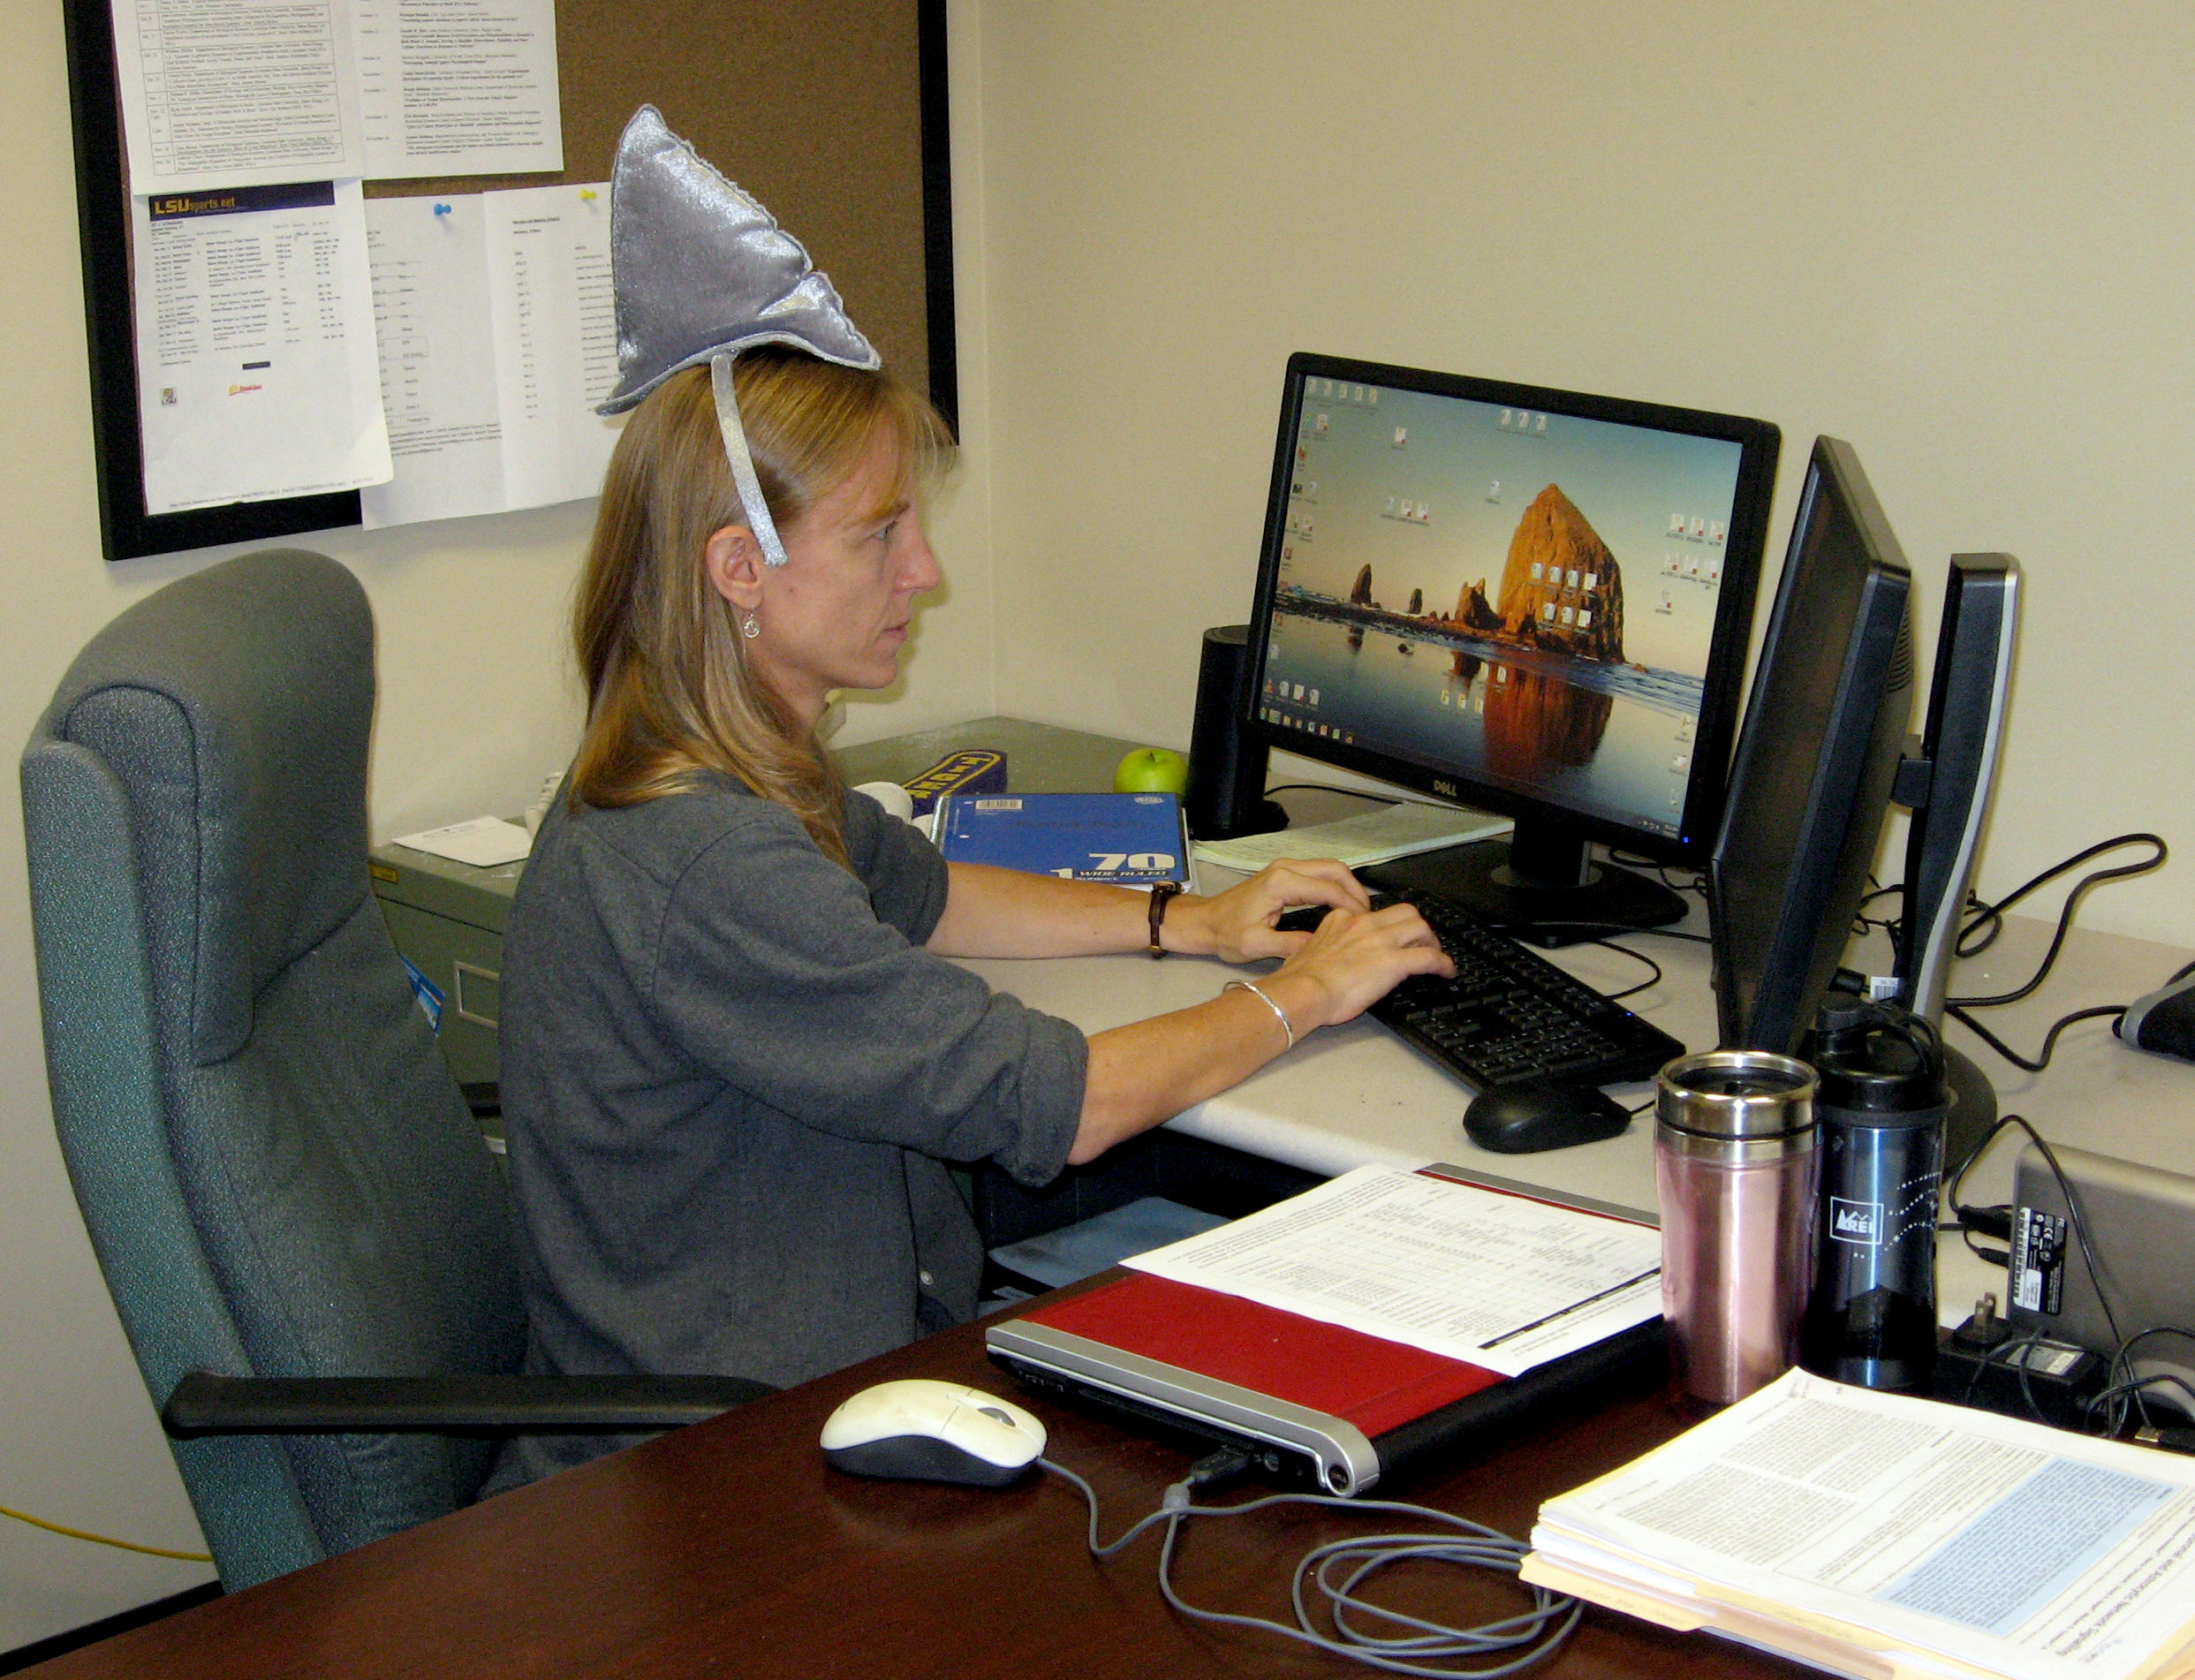 Karen with a shark fin hat